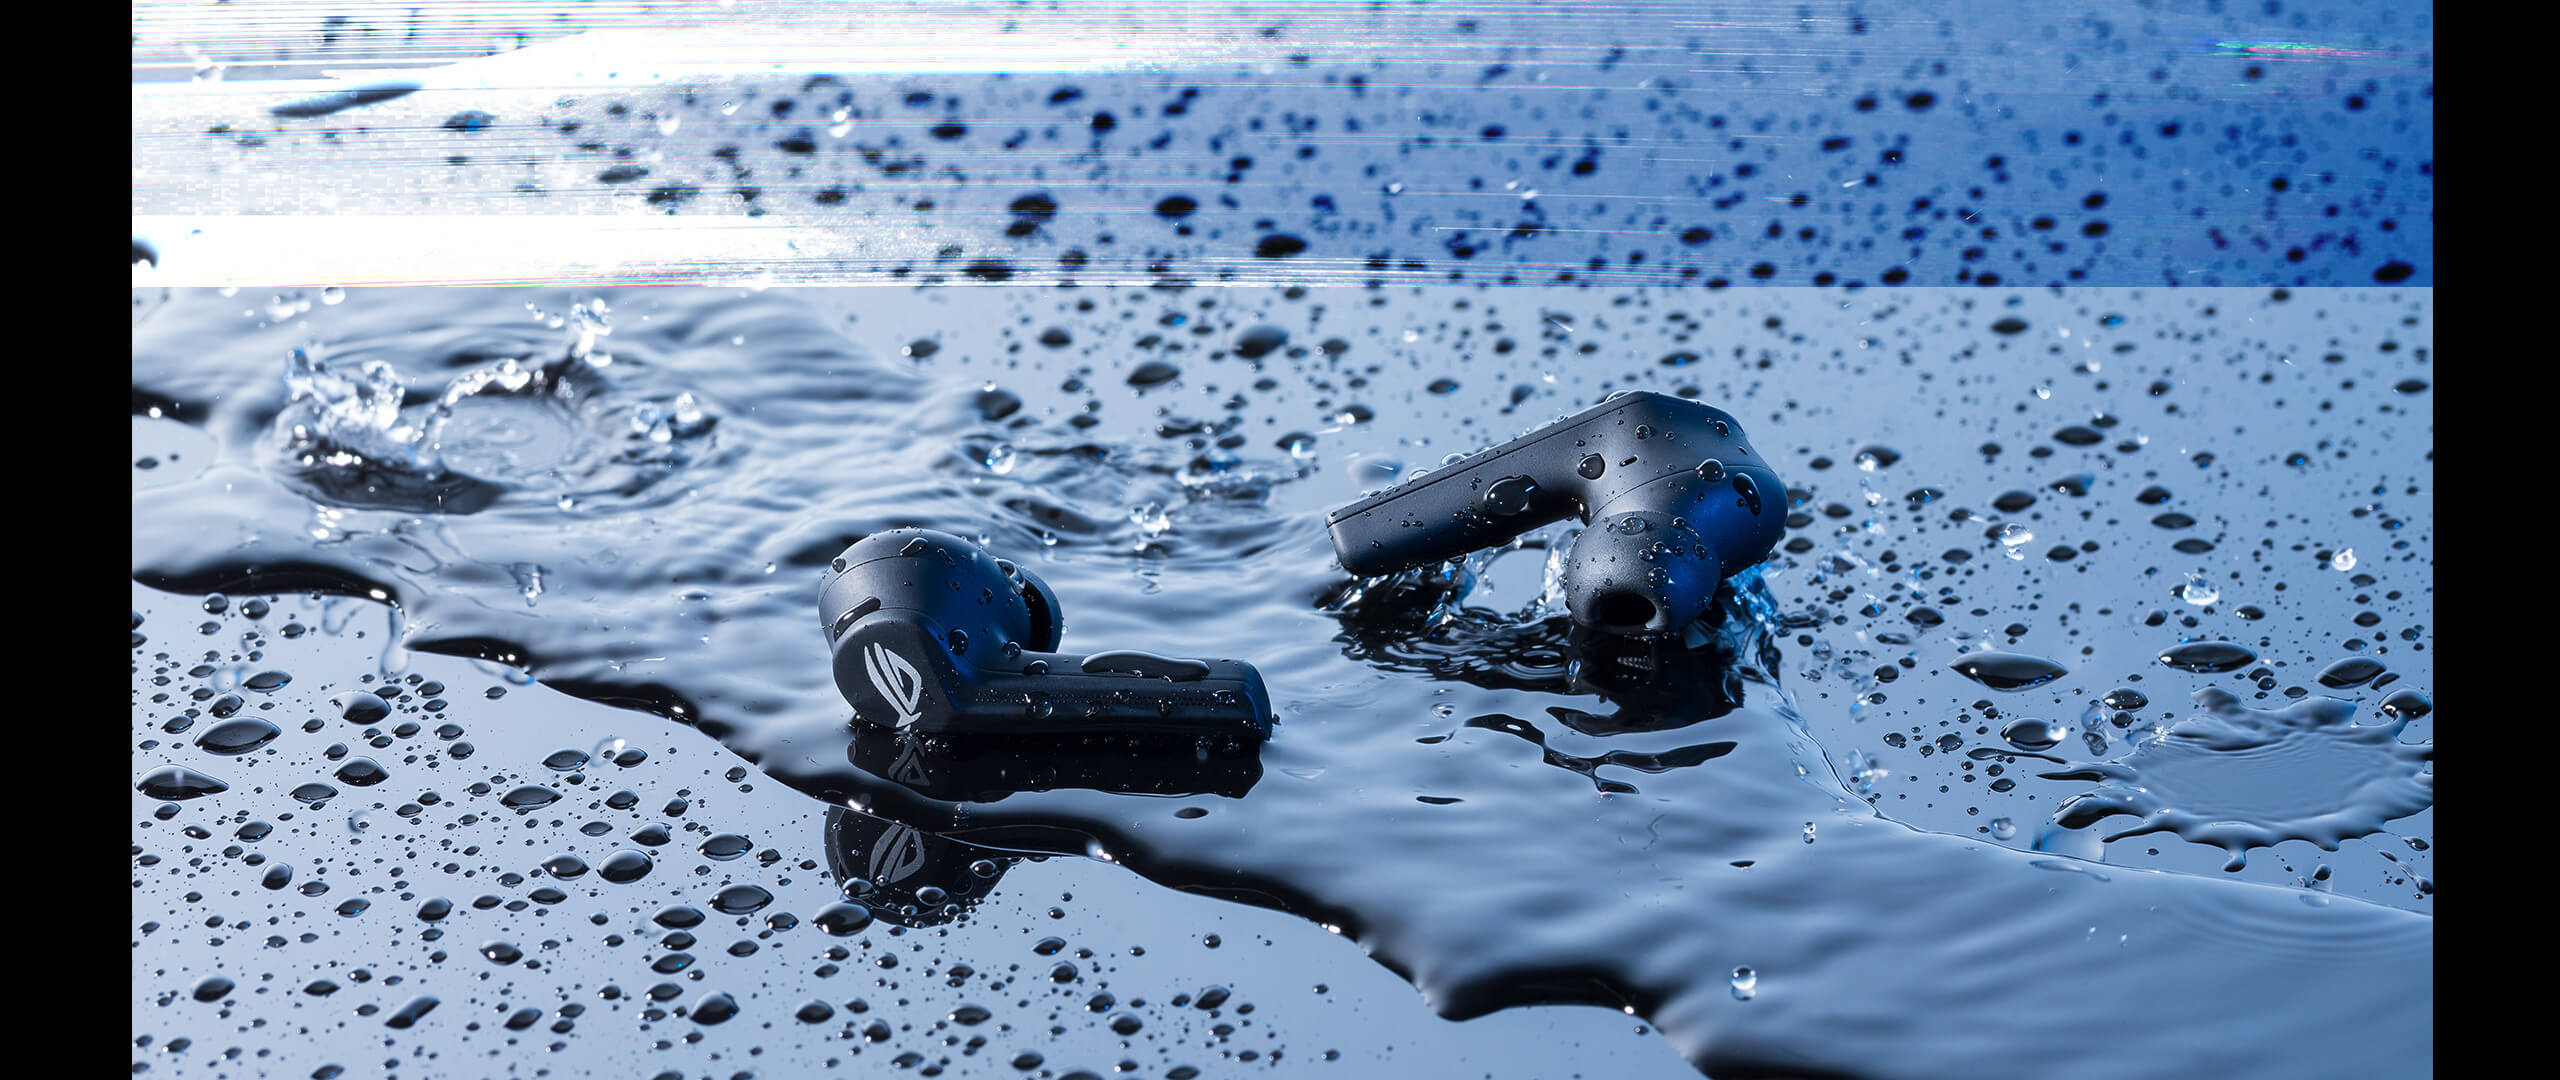 De ROG Cetra True Wireless Earbuds liggen in een plas water om de waterbestendigheid te demonstreren